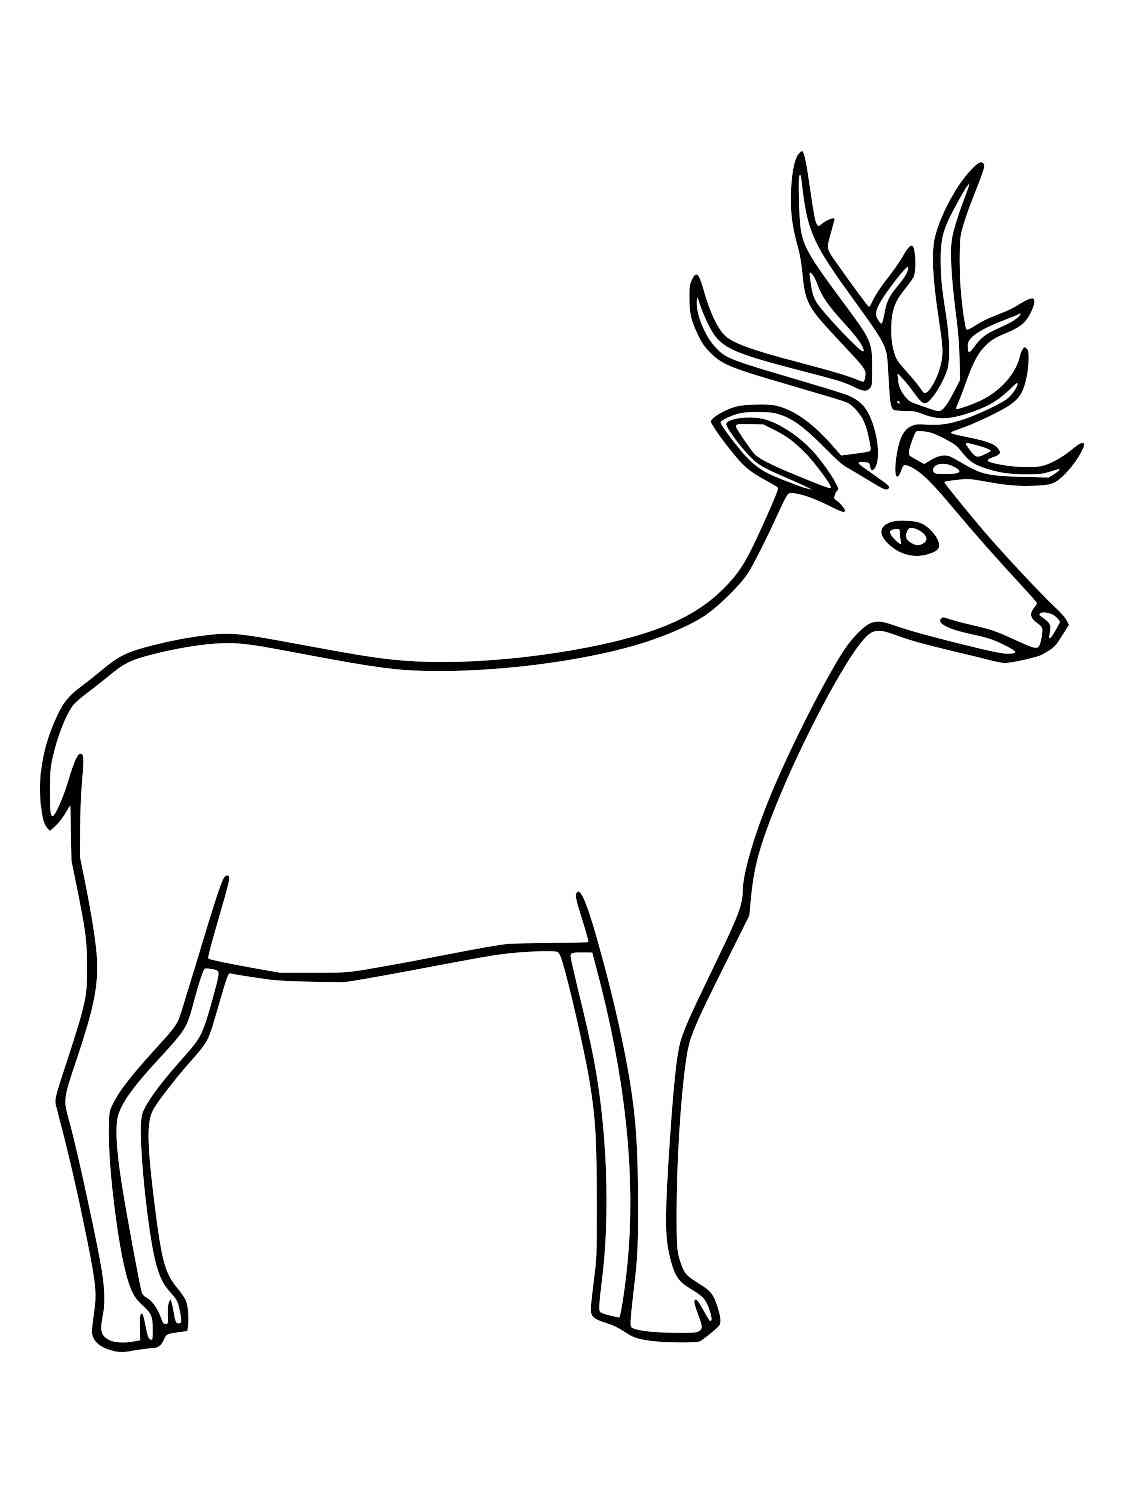 Simple Red Deer coloring page